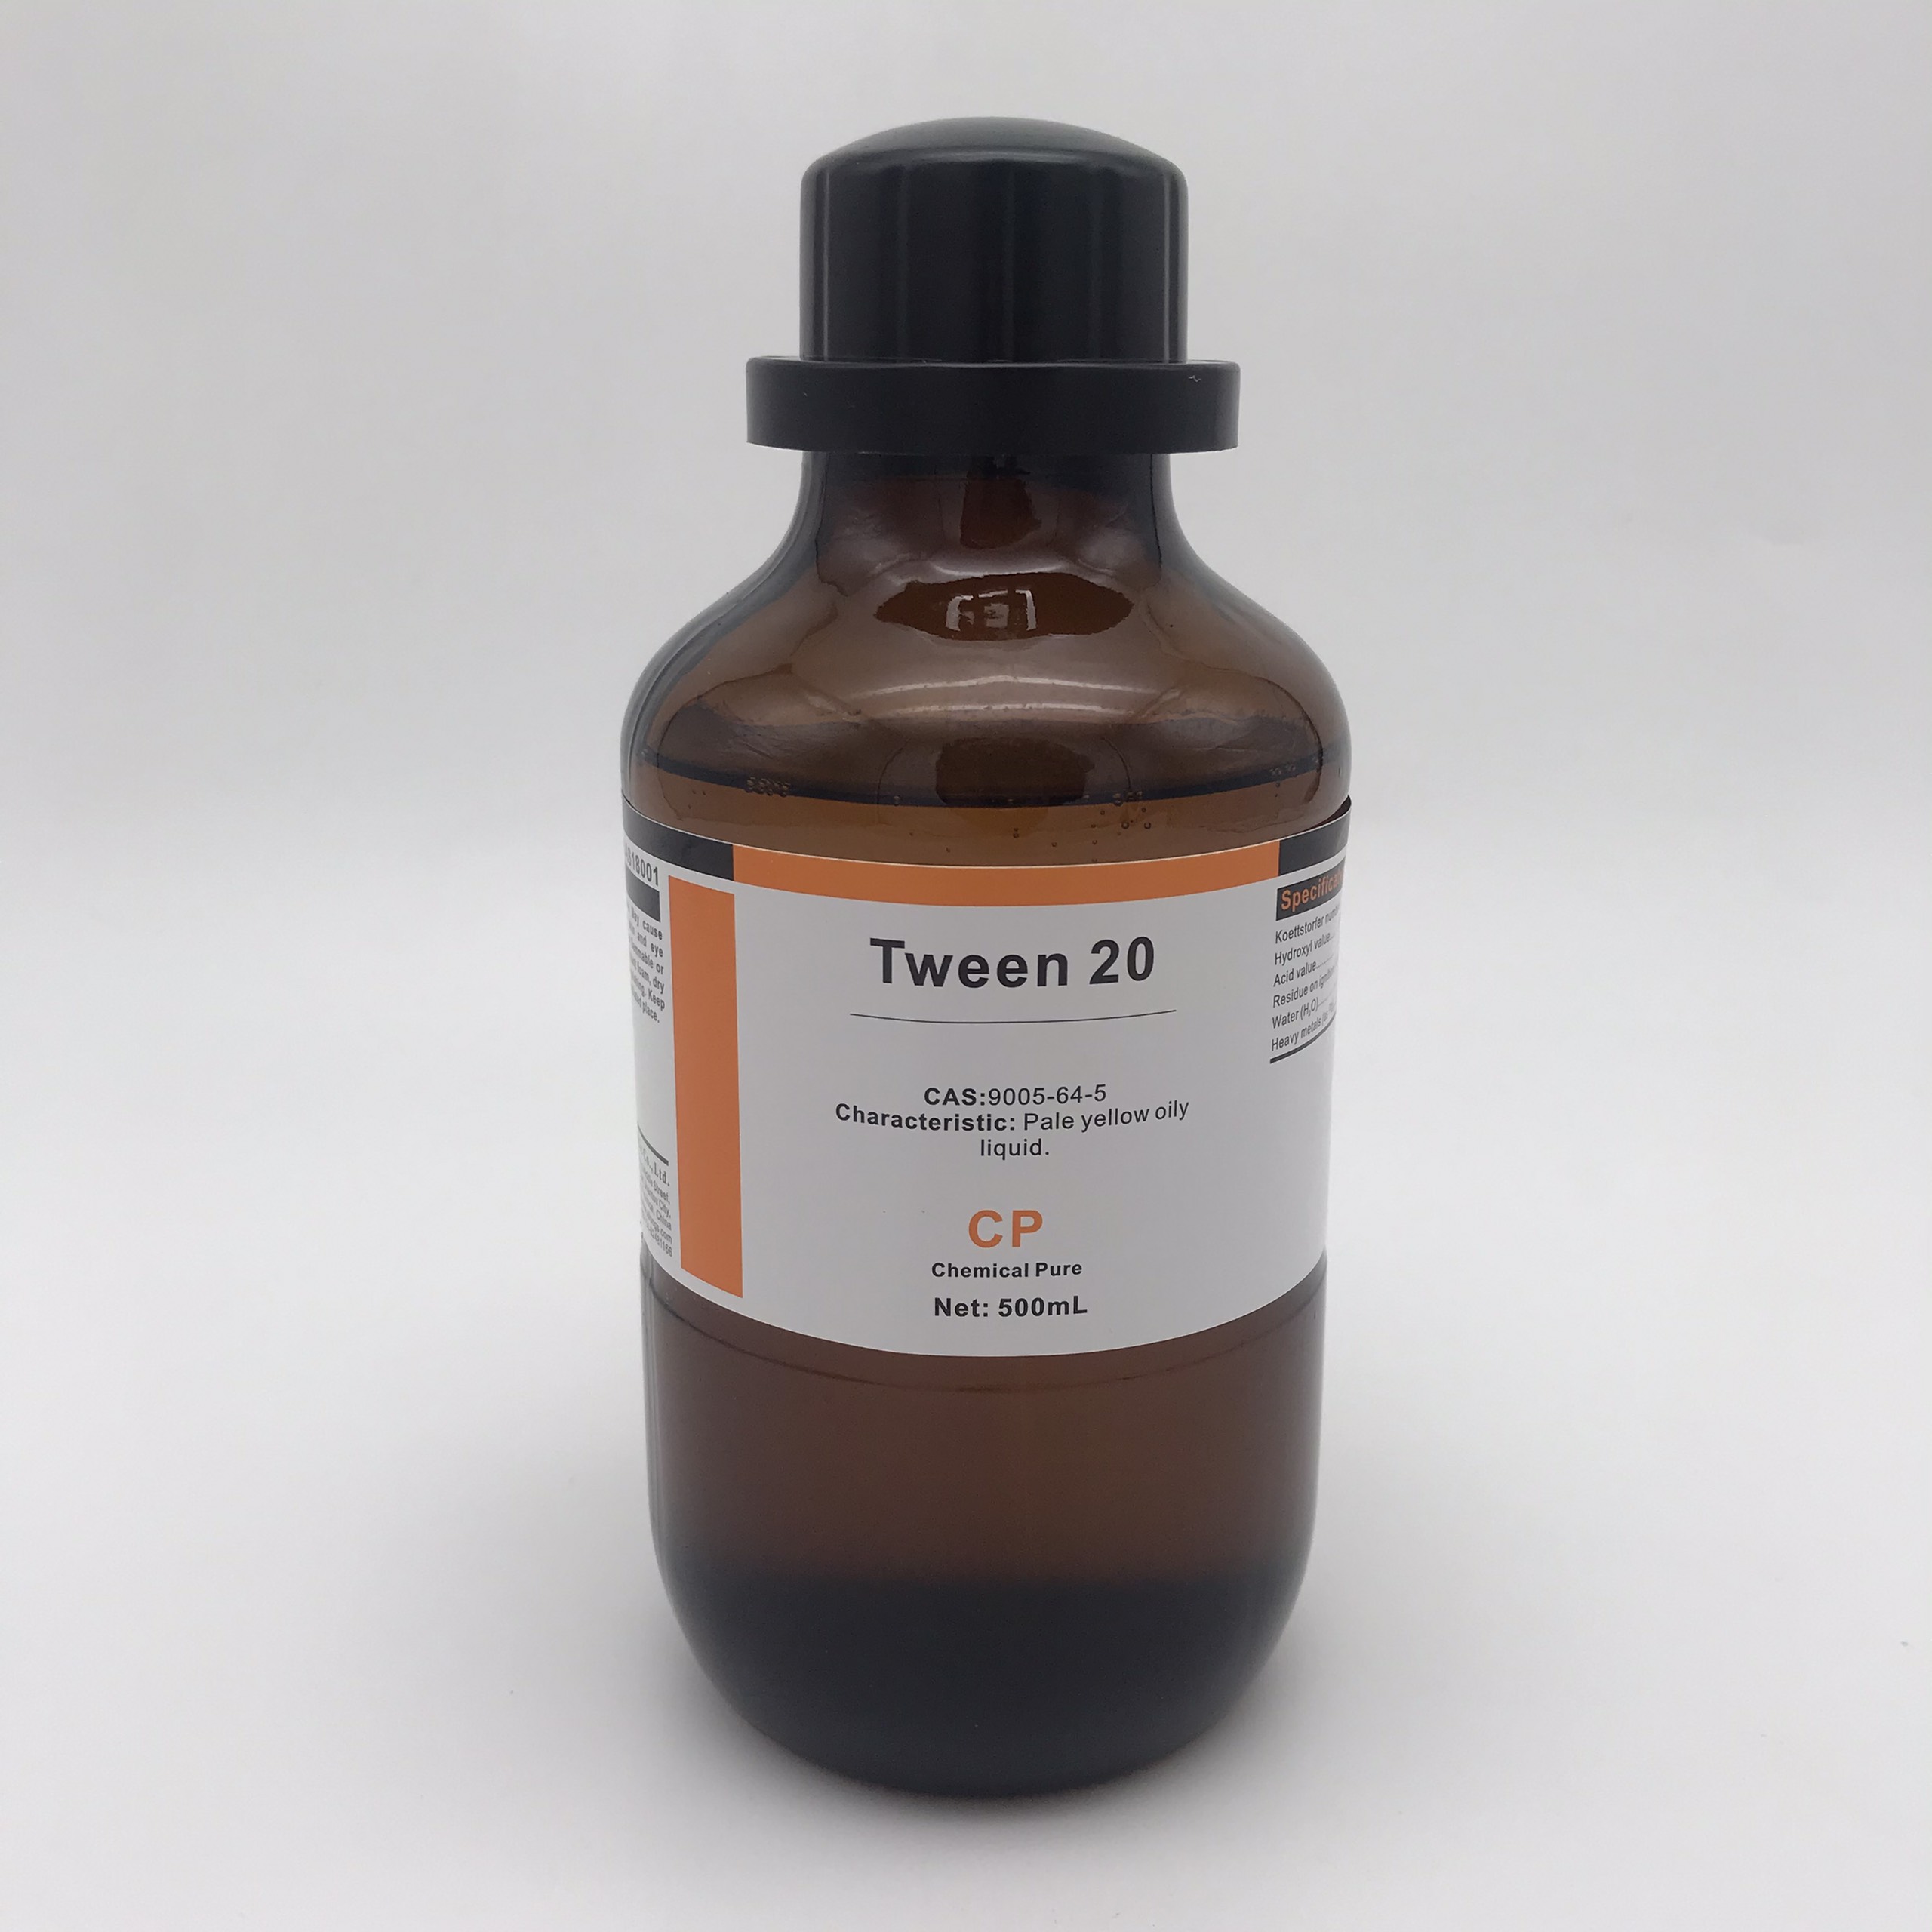 Tween 20 (Polysorbate 20, CP, Xilong, Cas 9005-64-5)